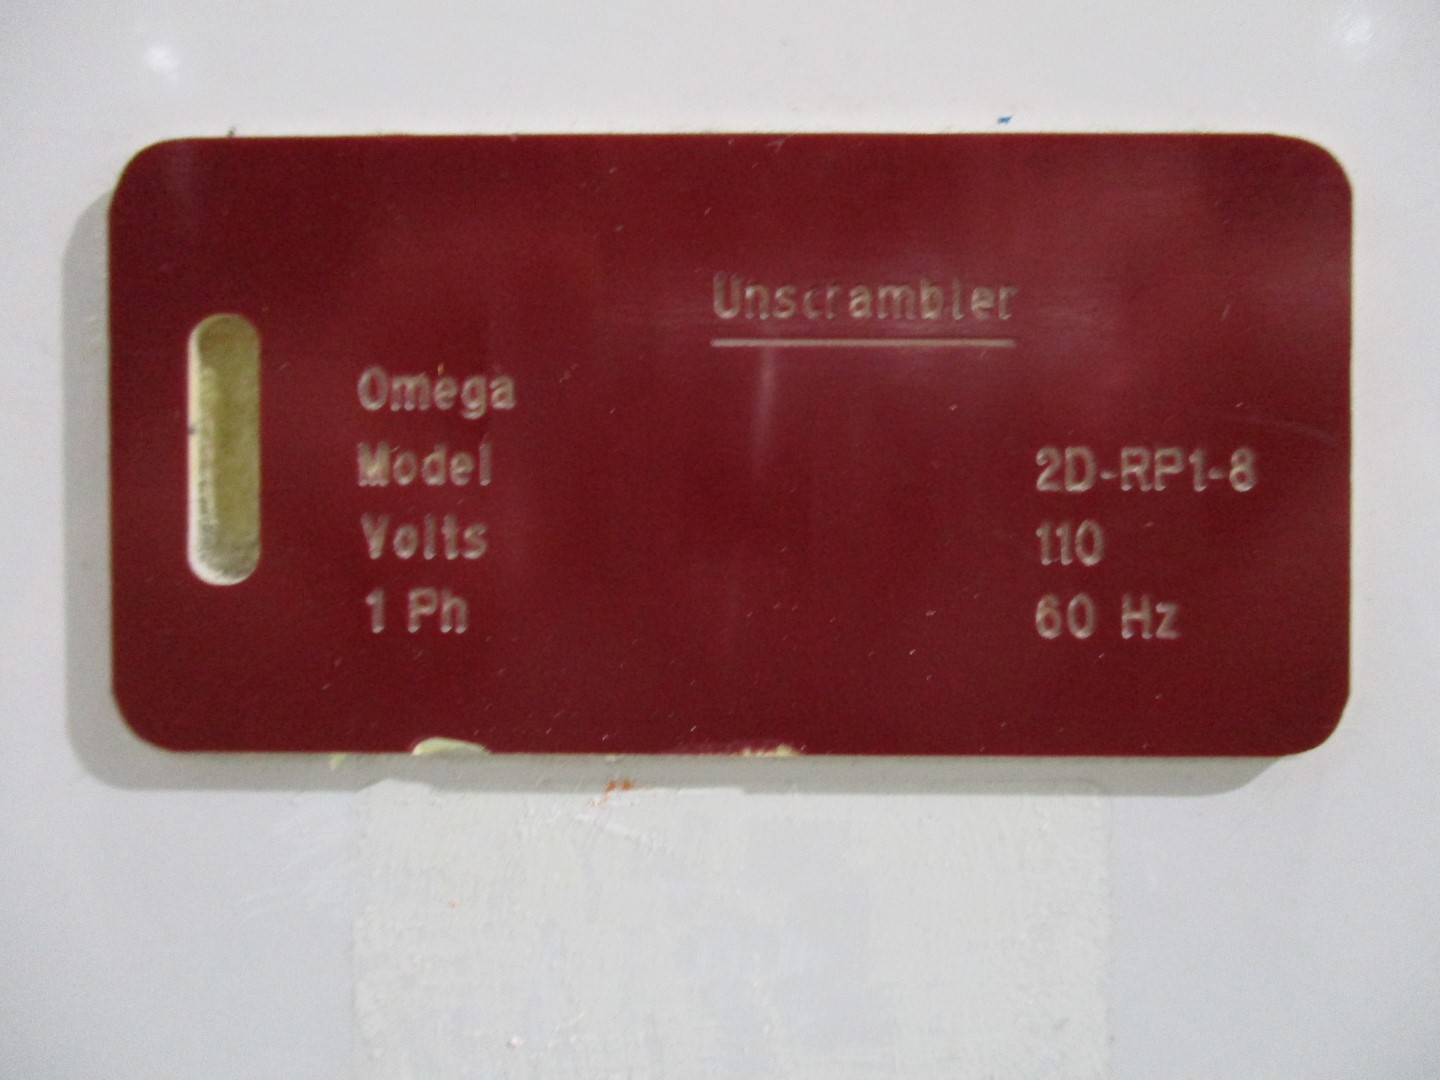 Used Omega bottle unscrambler model 2D-RP1-8 with bottle cleaner